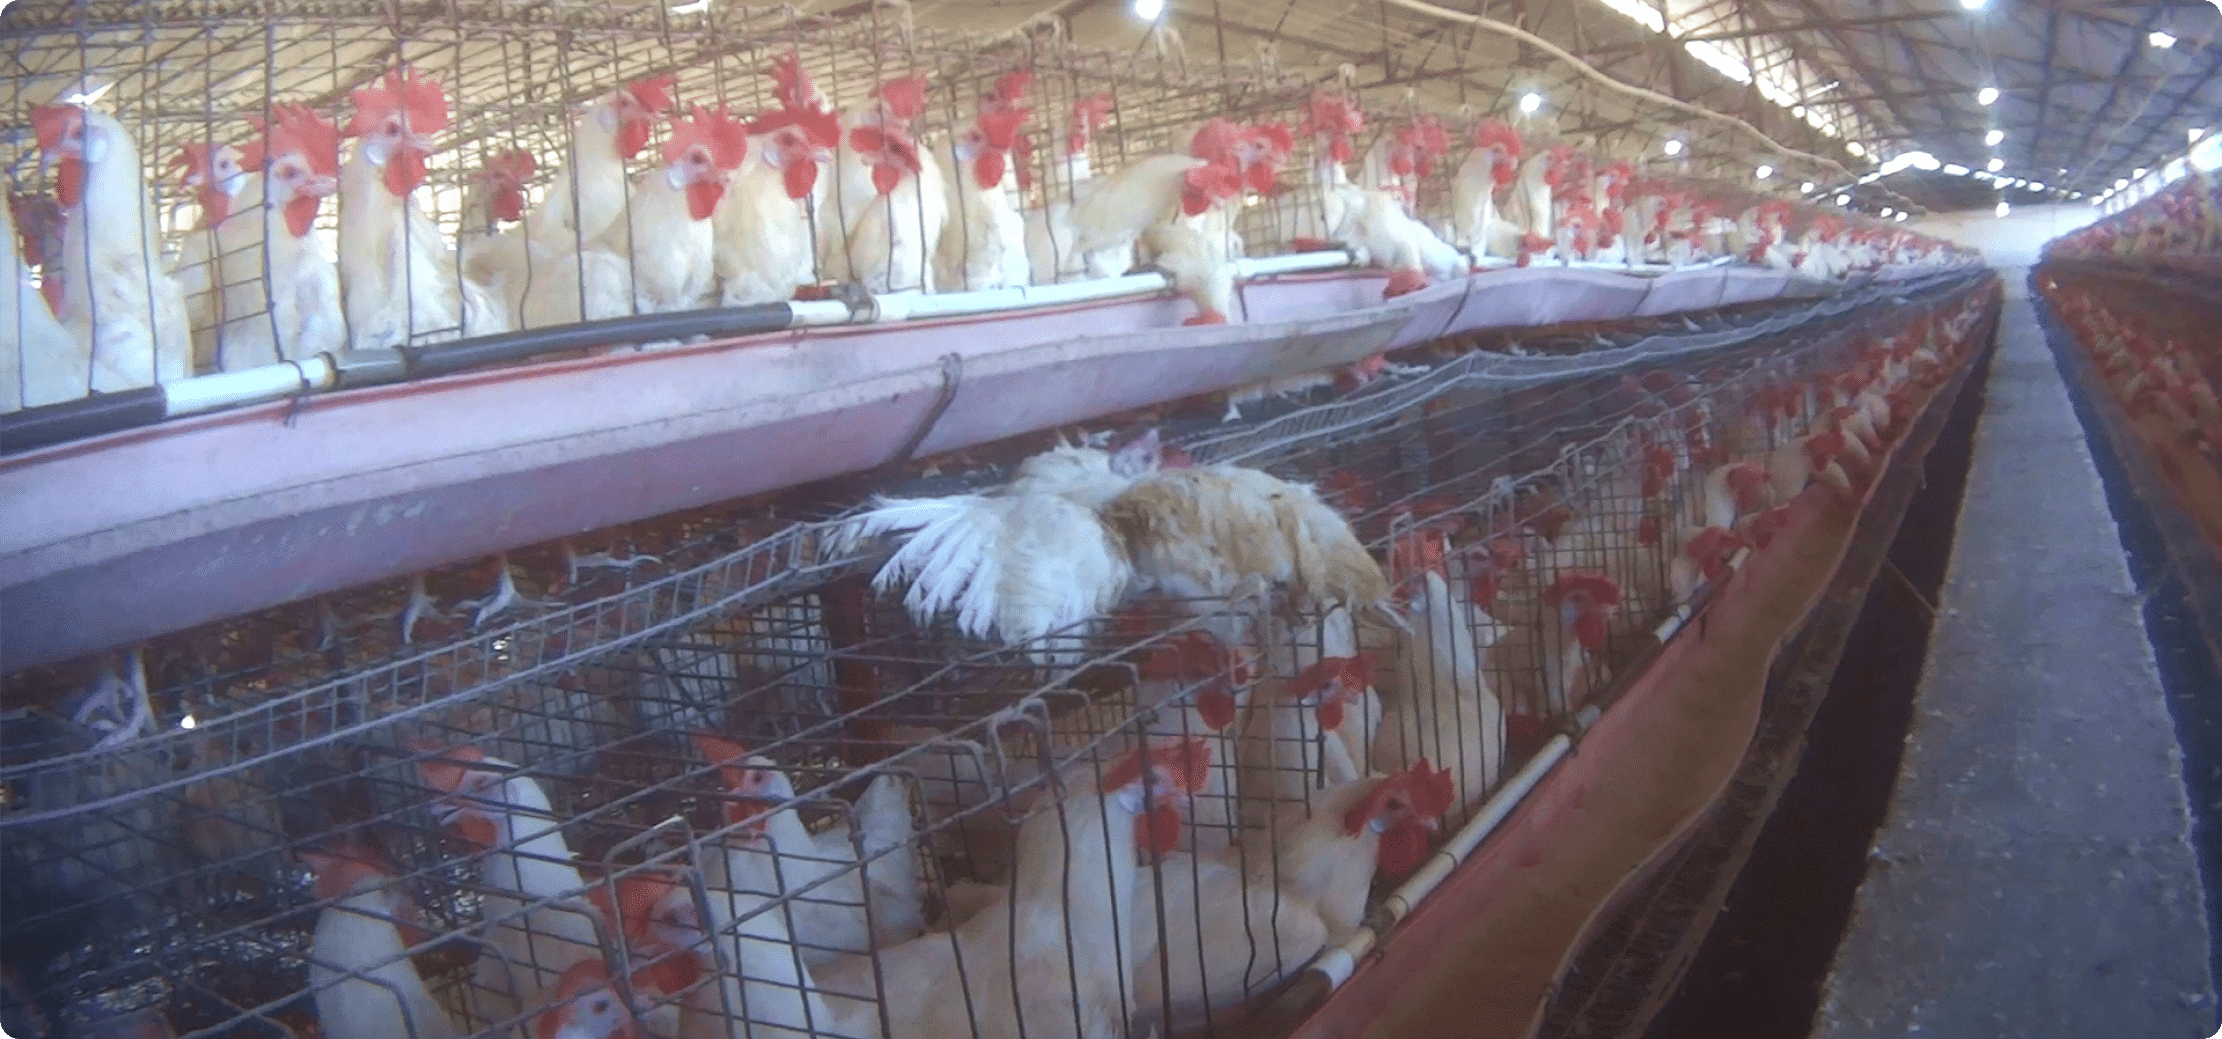 Hens on egg farm